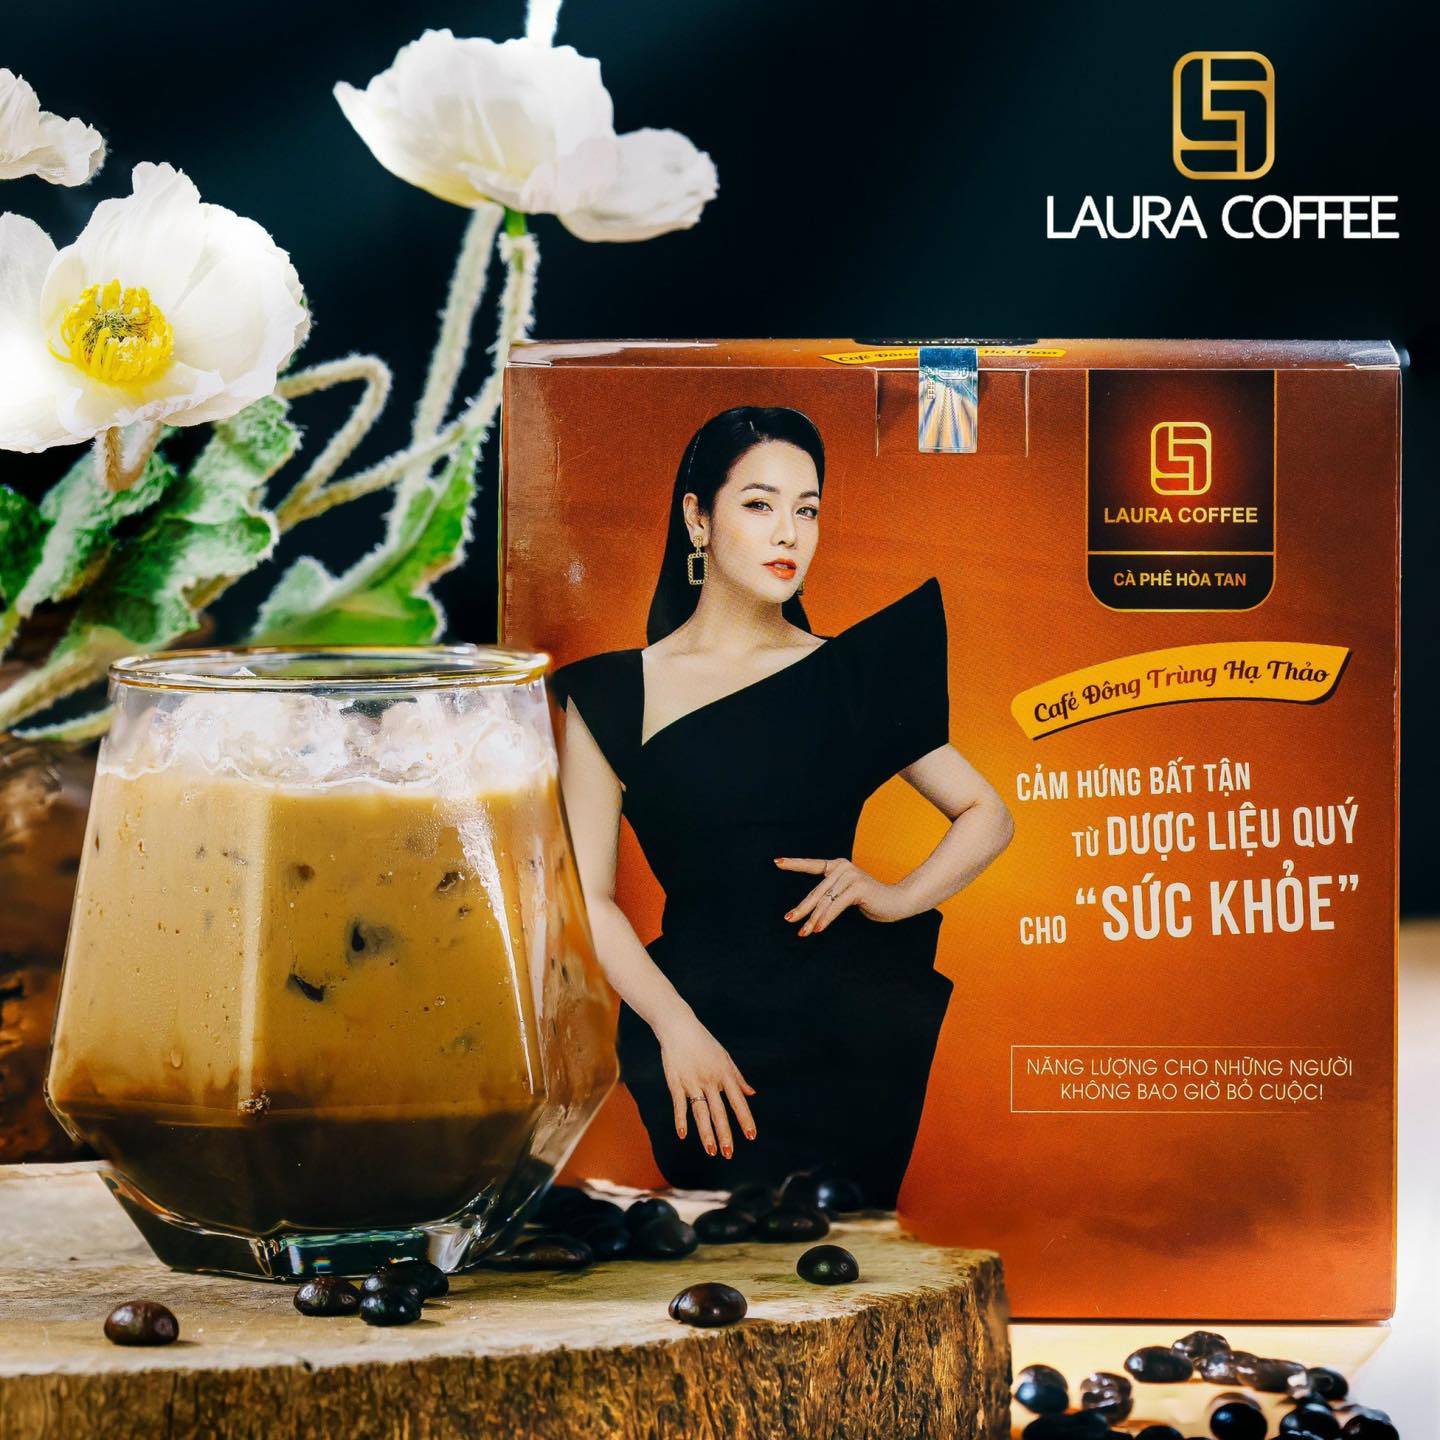 Cà phê hòa tan cao cấp Laura Coffee Đông Trùng Hạ Thảo Nhật Kim Anh hộp 10 gói